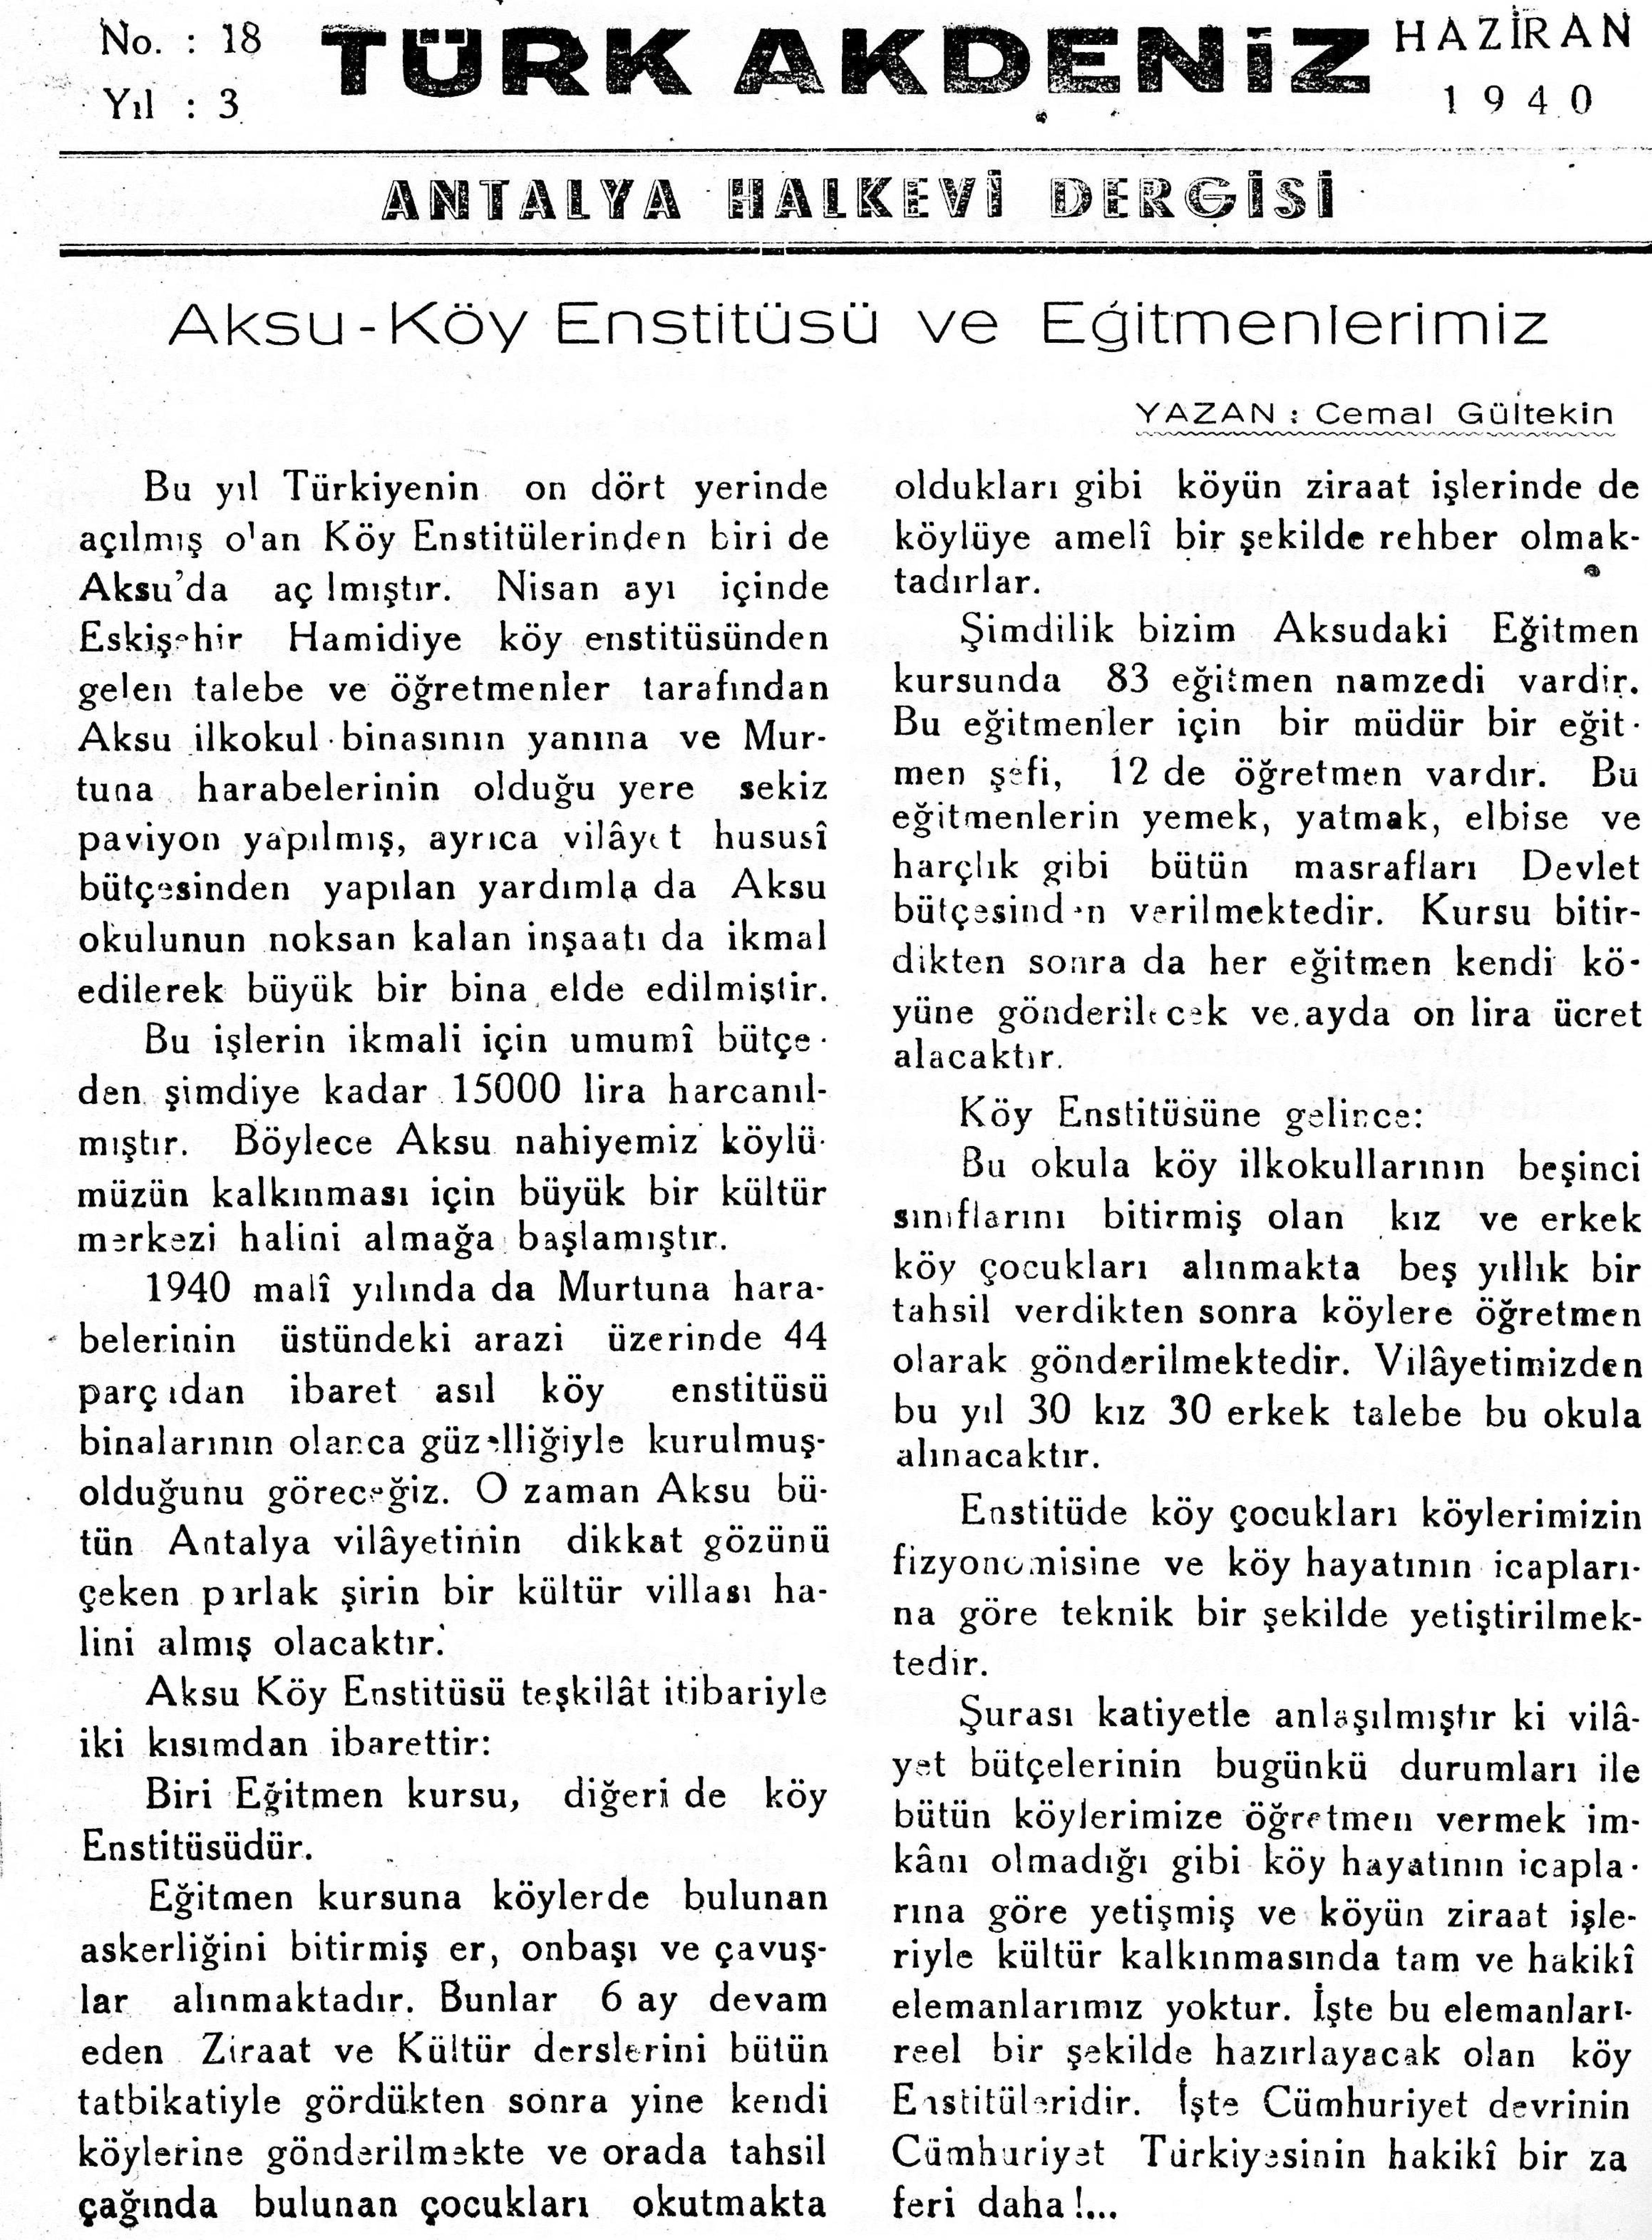 he-turk-akdeniz_1940-3(18)